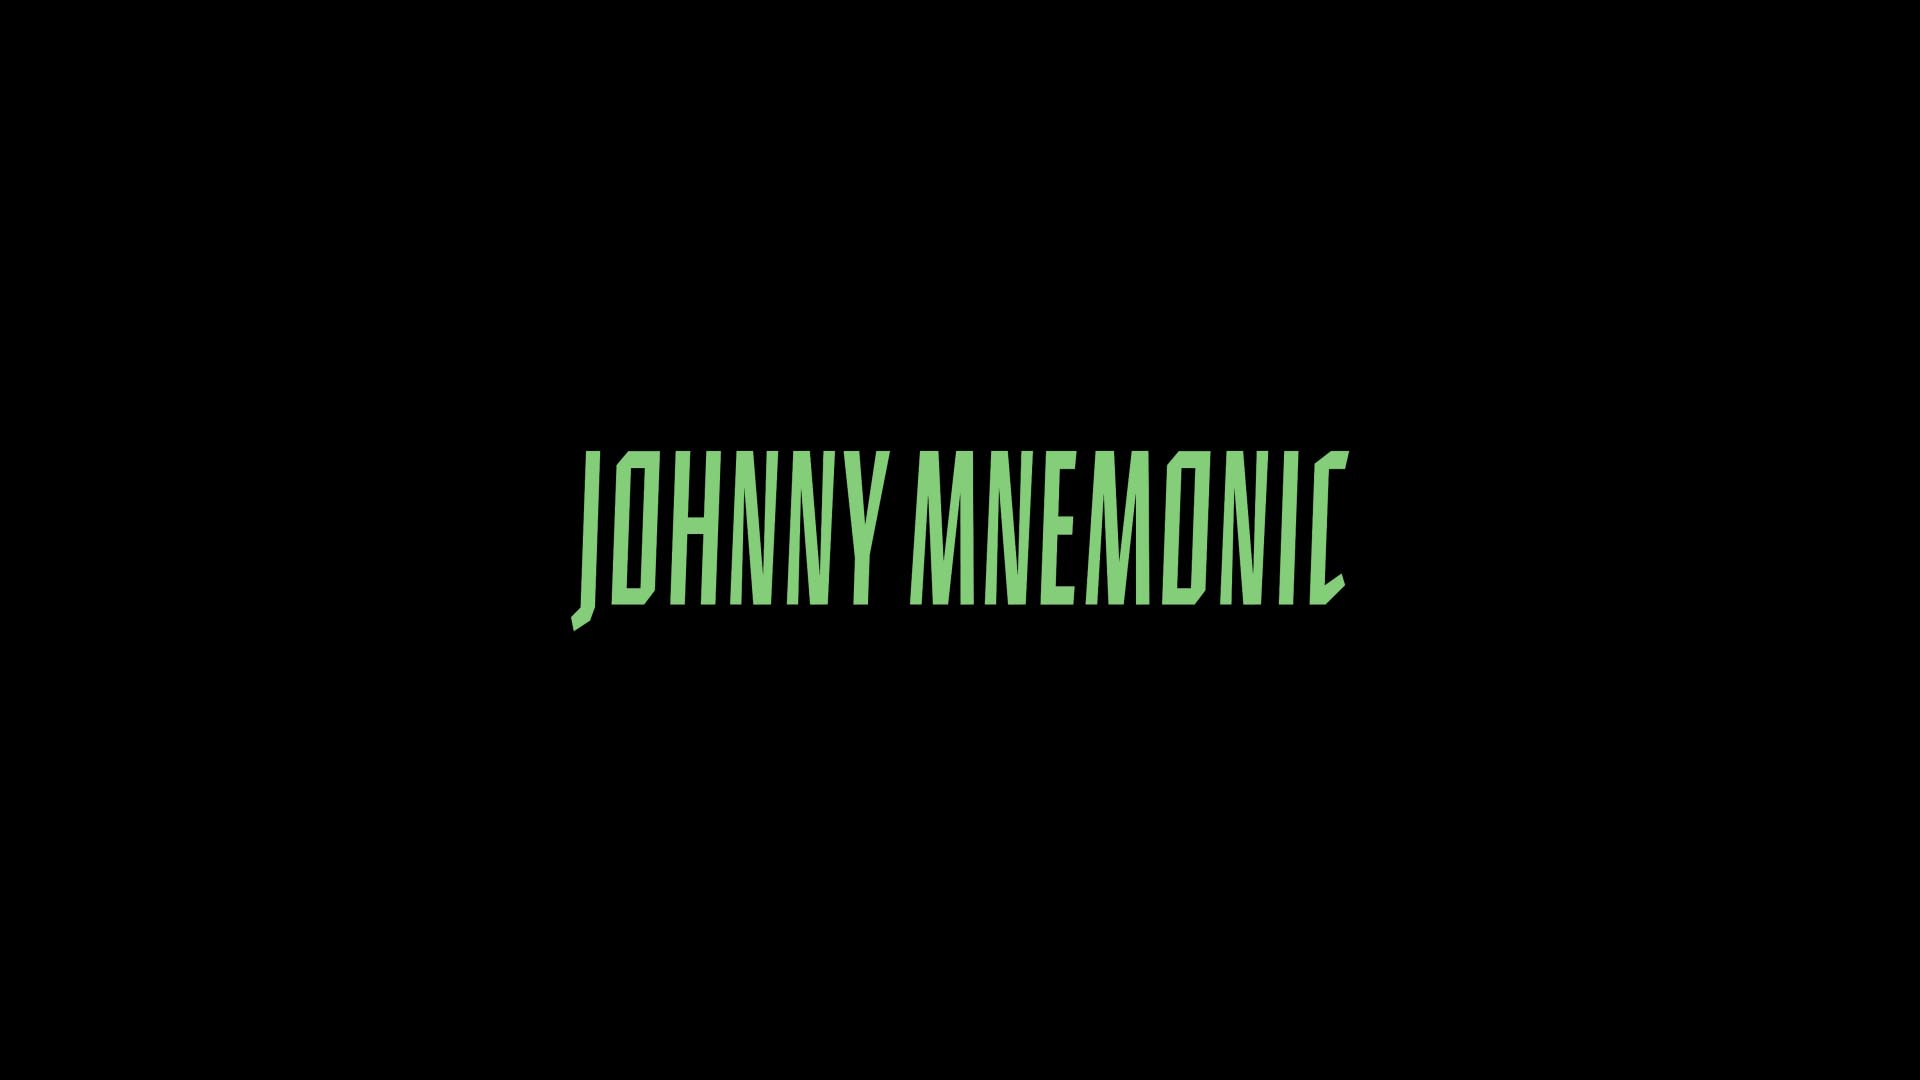 johnny mnemonic, movie